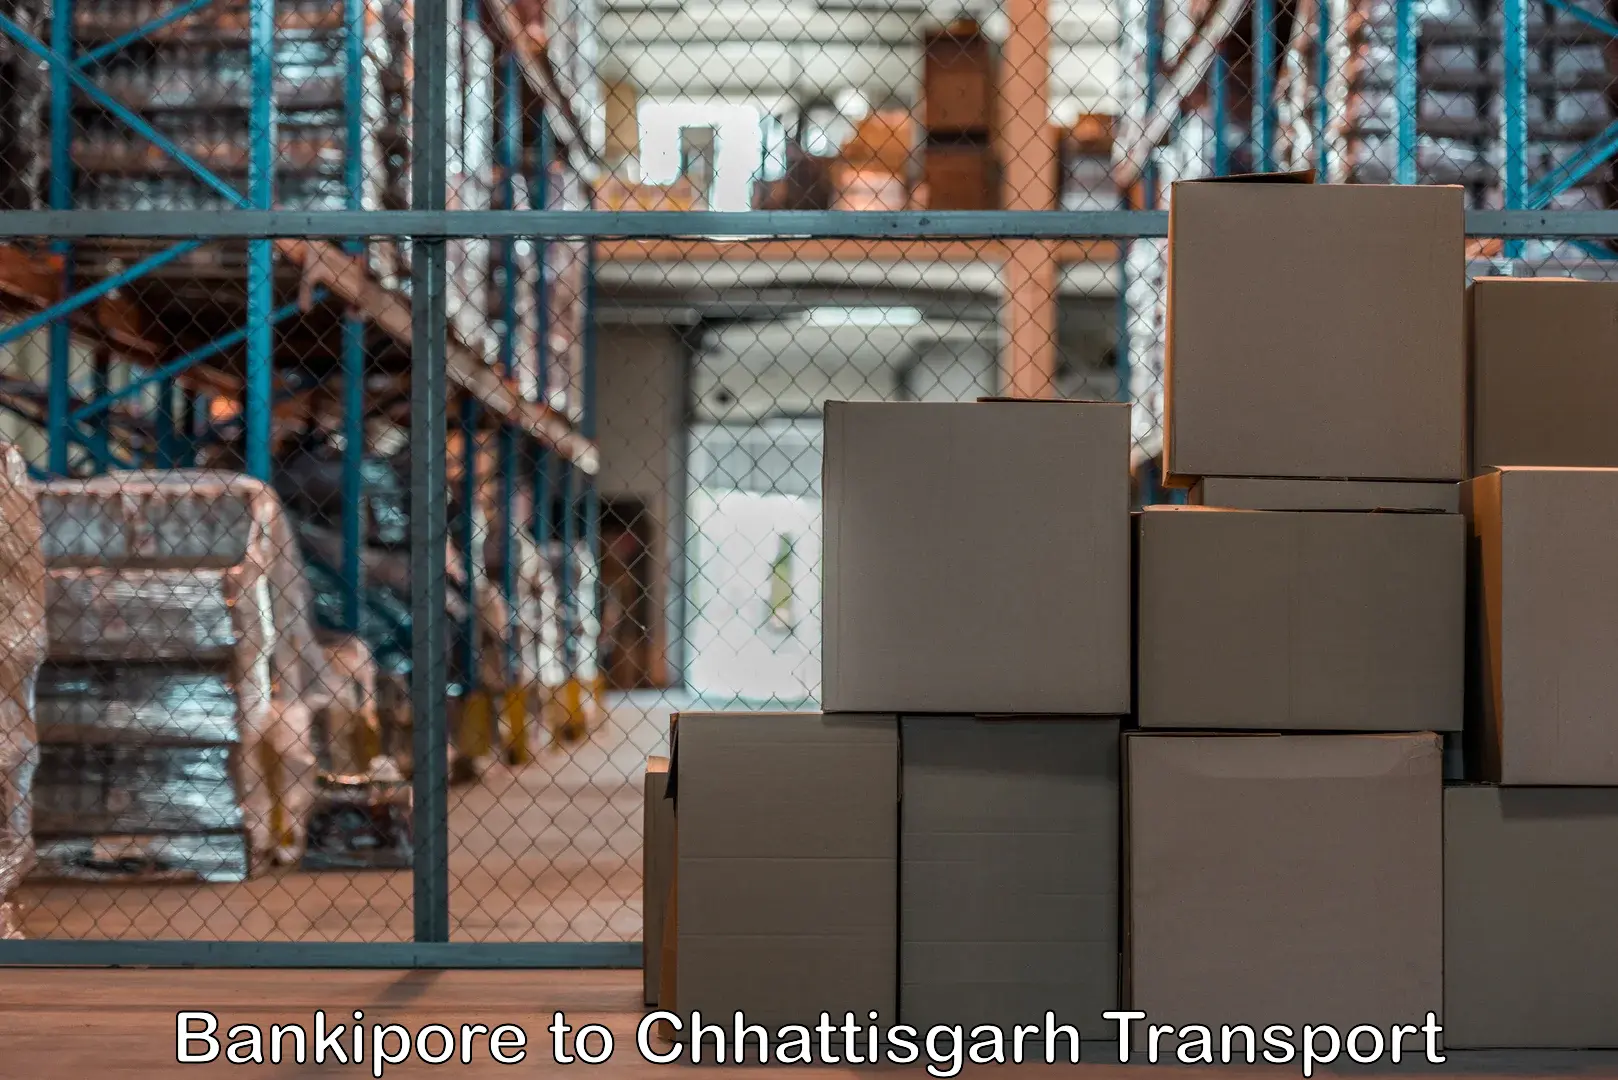 Air cargo transport services Bankipore to Korea Chhattisgarh